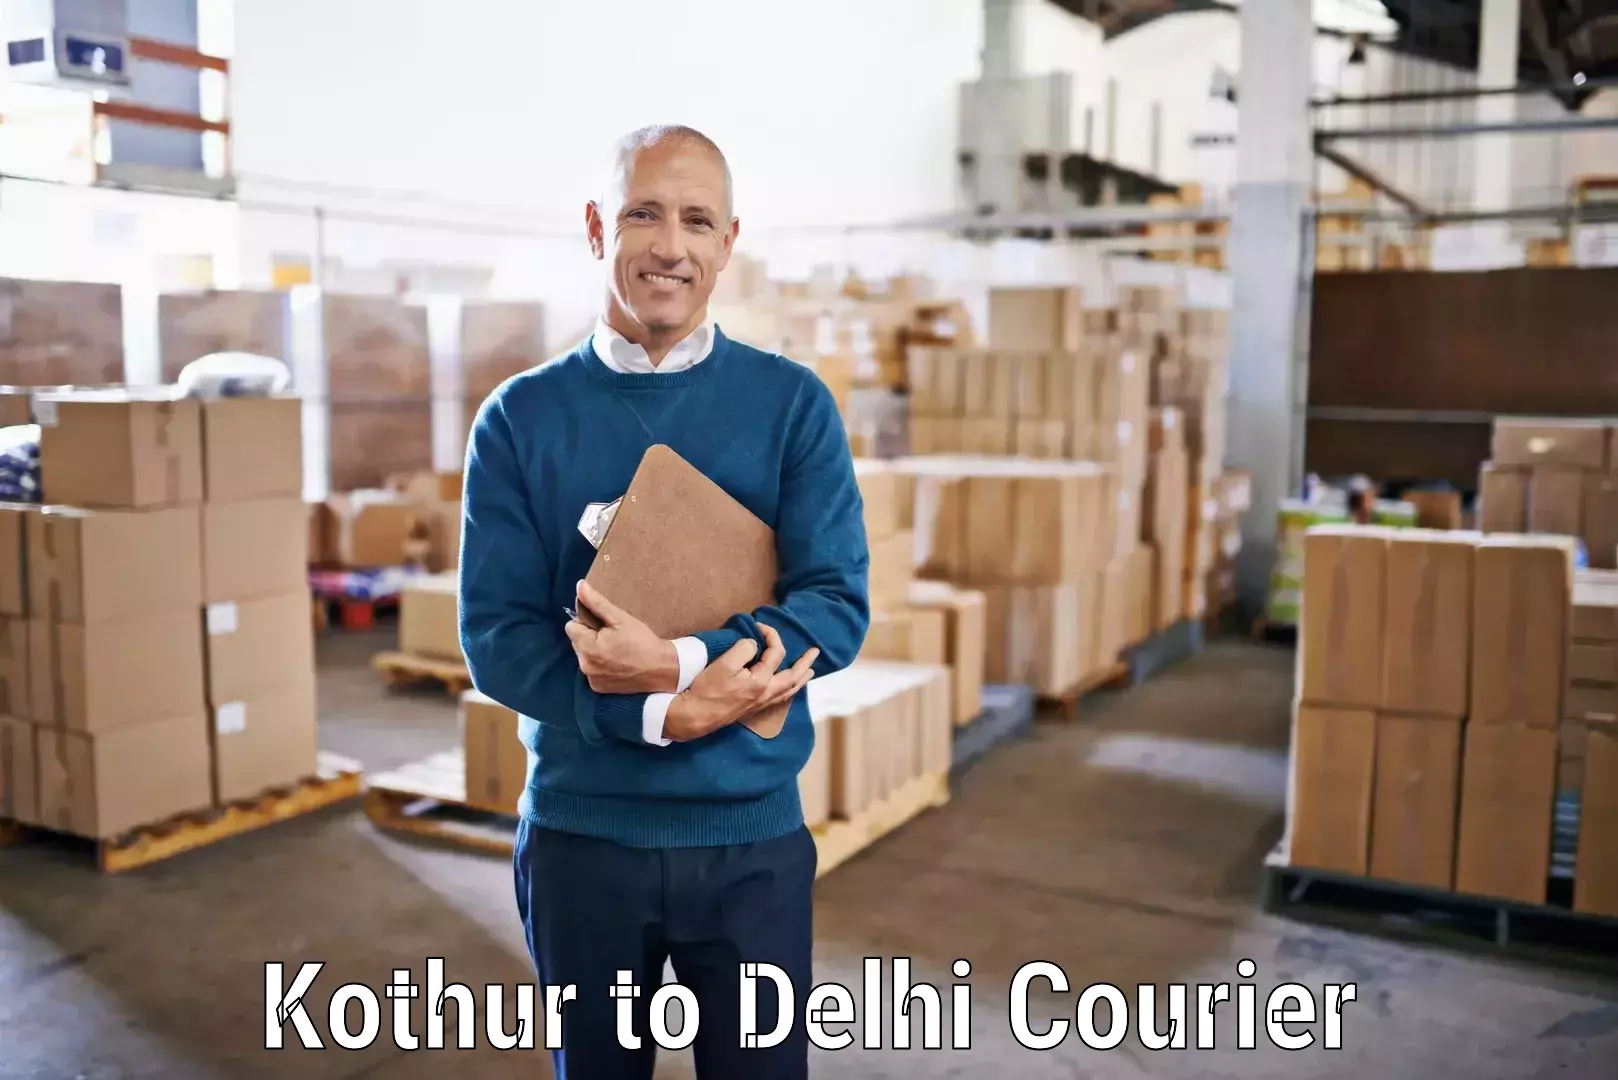 Efficient cargo handling Kothur to Delhi